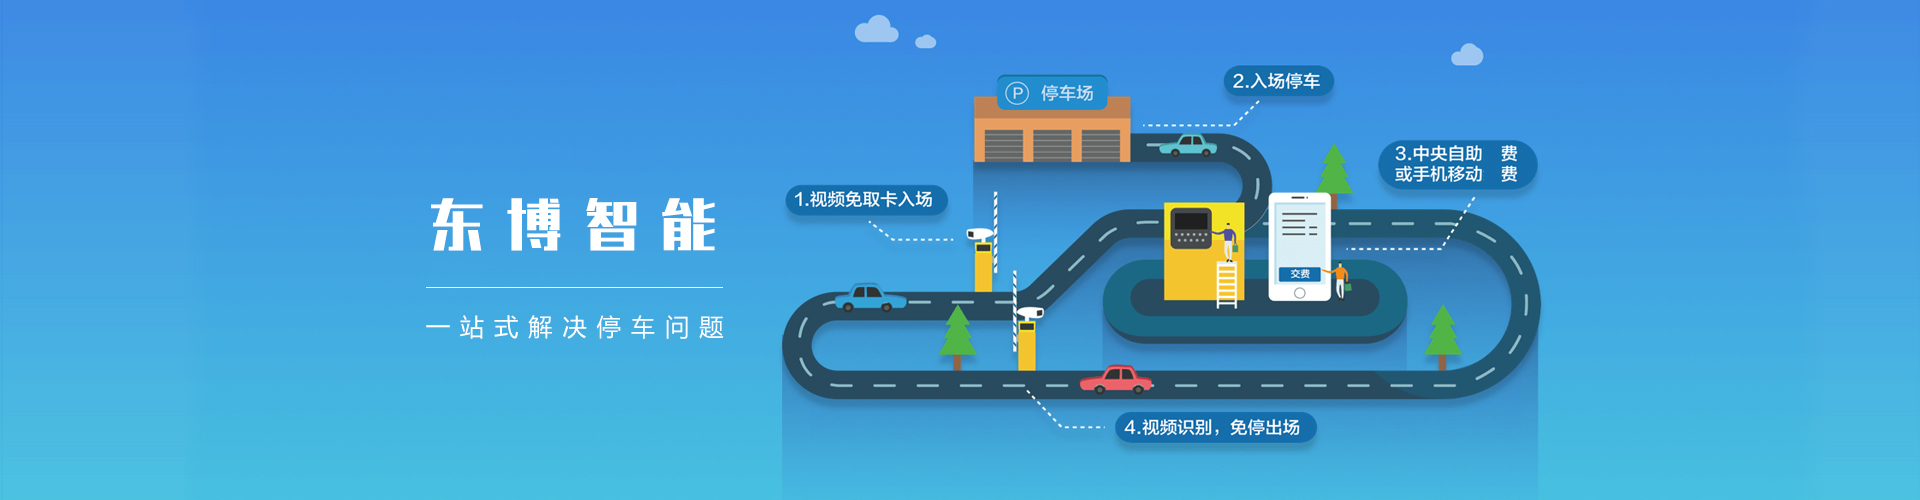 廣州智能停車管理